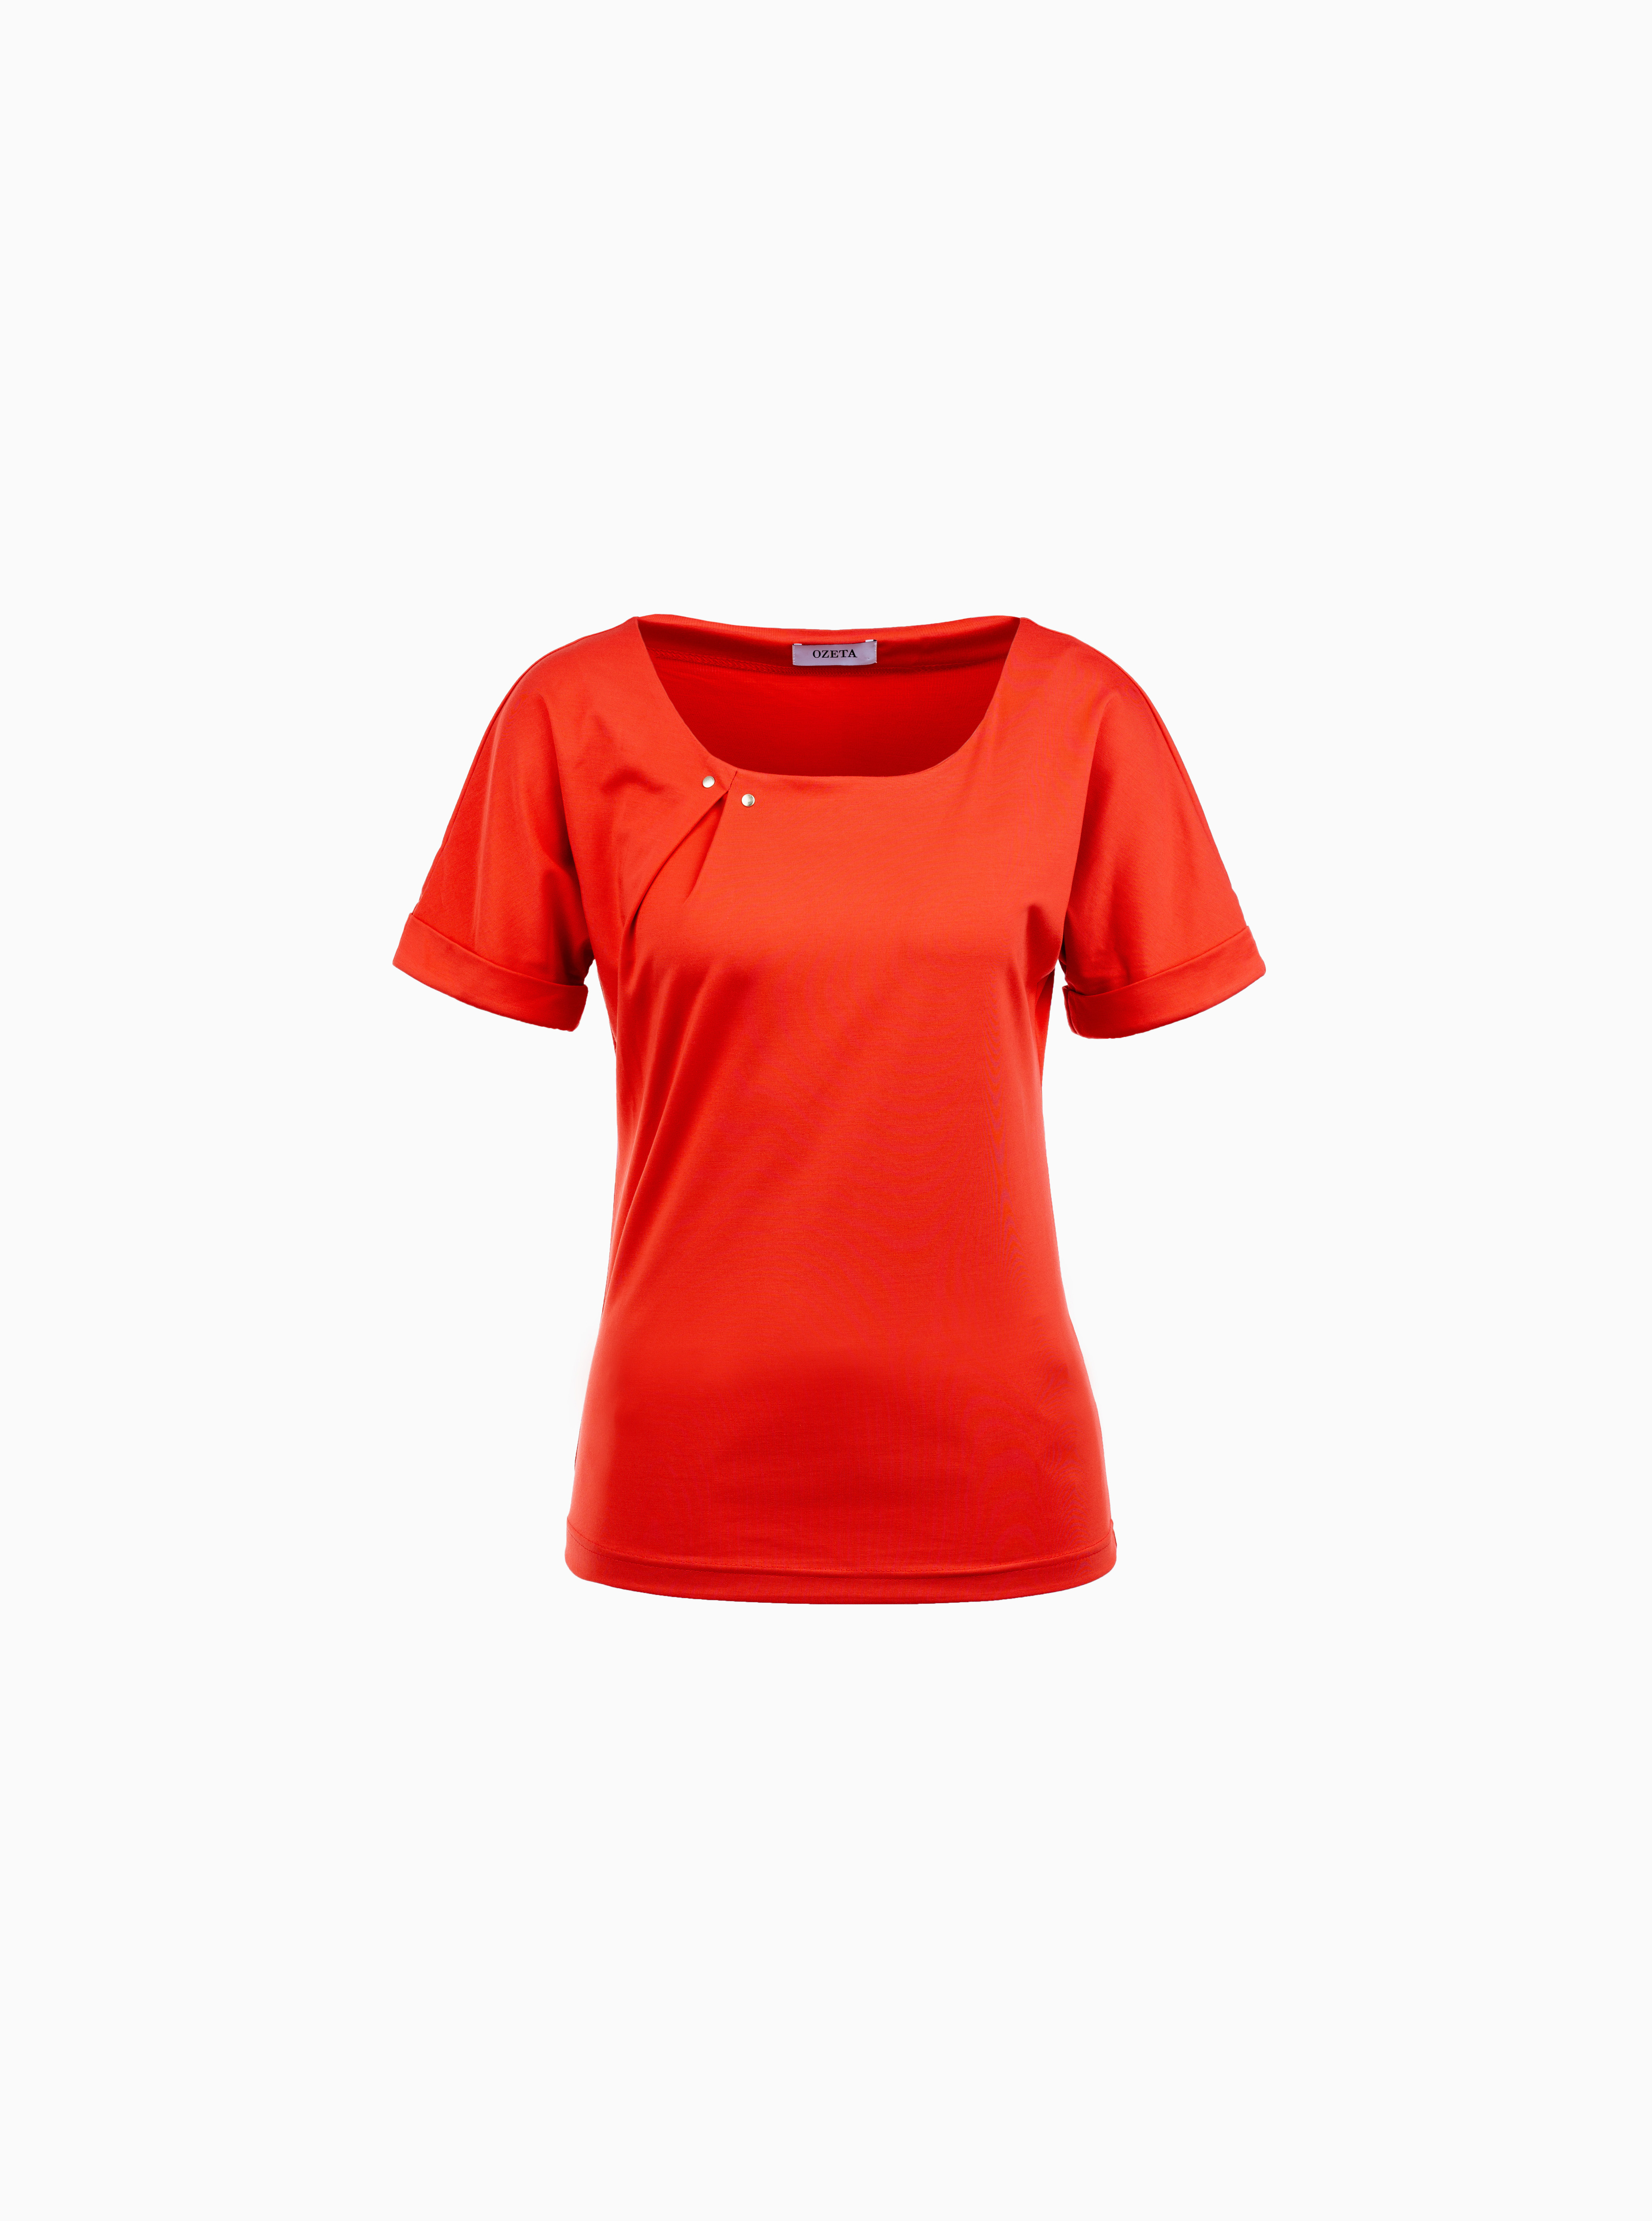 T-Shirt Orange mit Goldnieten-Detail